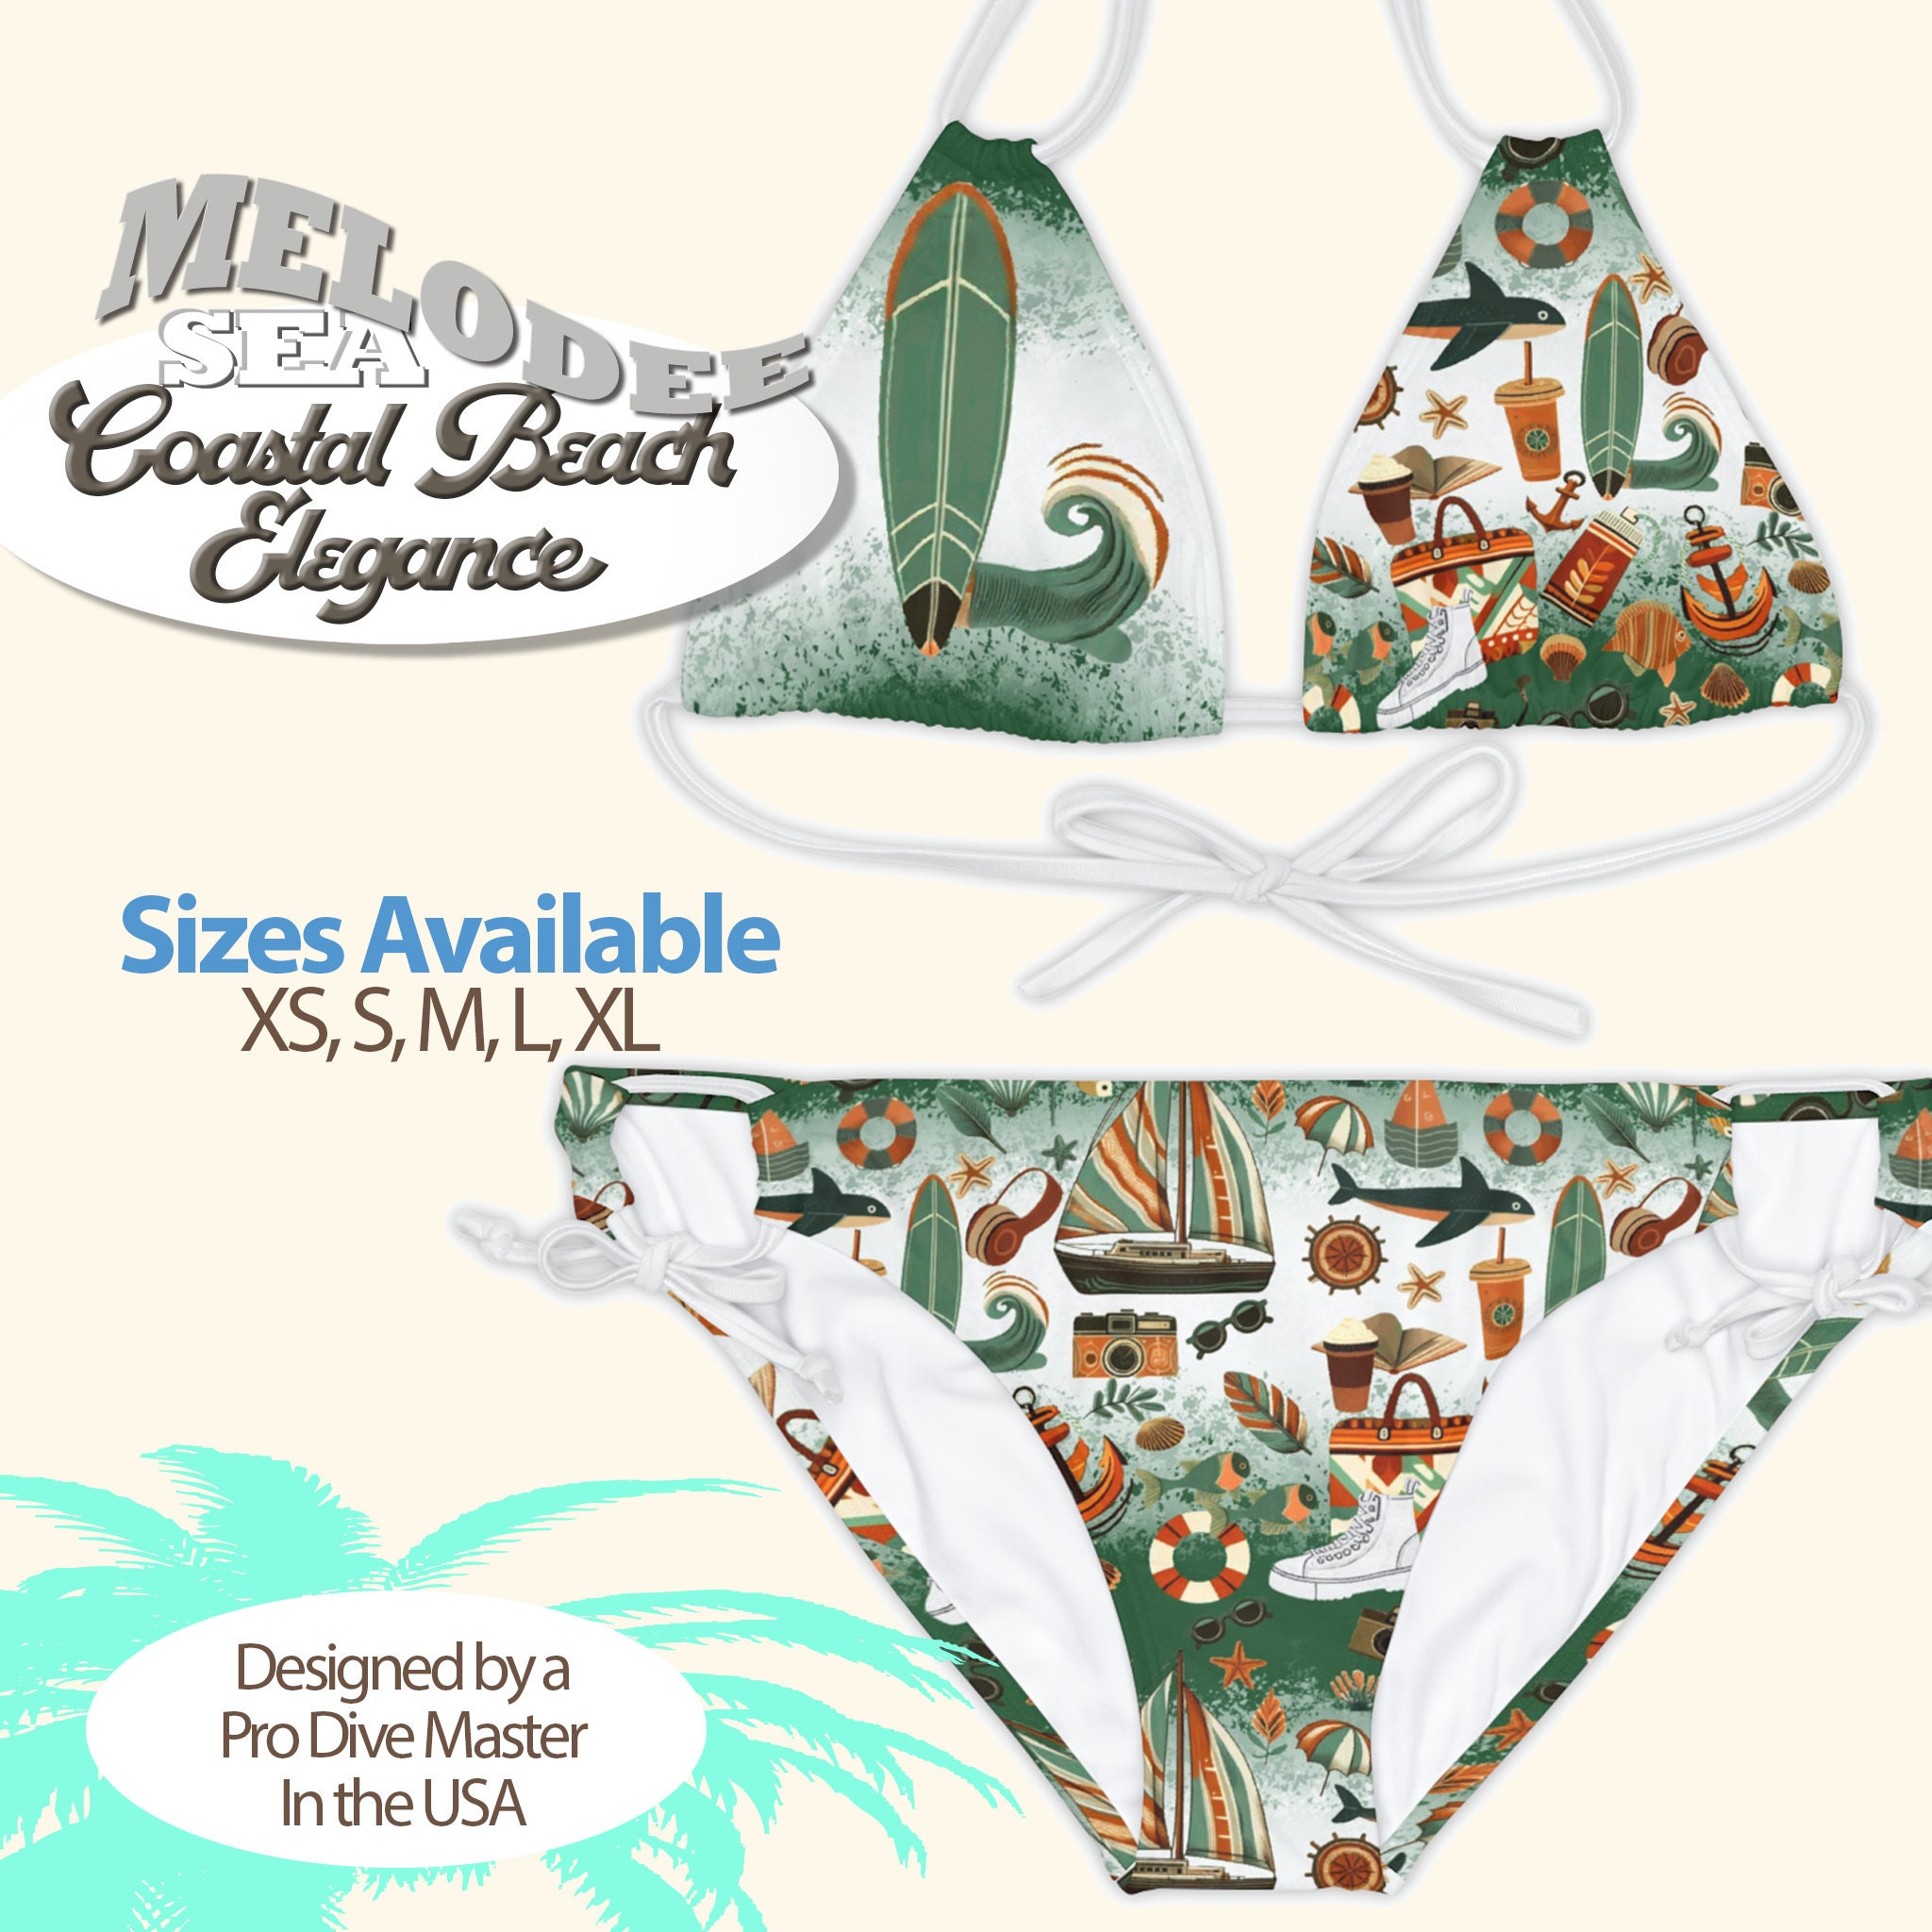 Agave Green Micro Bikini String Swimwear, Minimal Coverage Top, Micro Bikini,  Black Bikini Top for Sunbathing, Tiny Bikini, Olive Green 